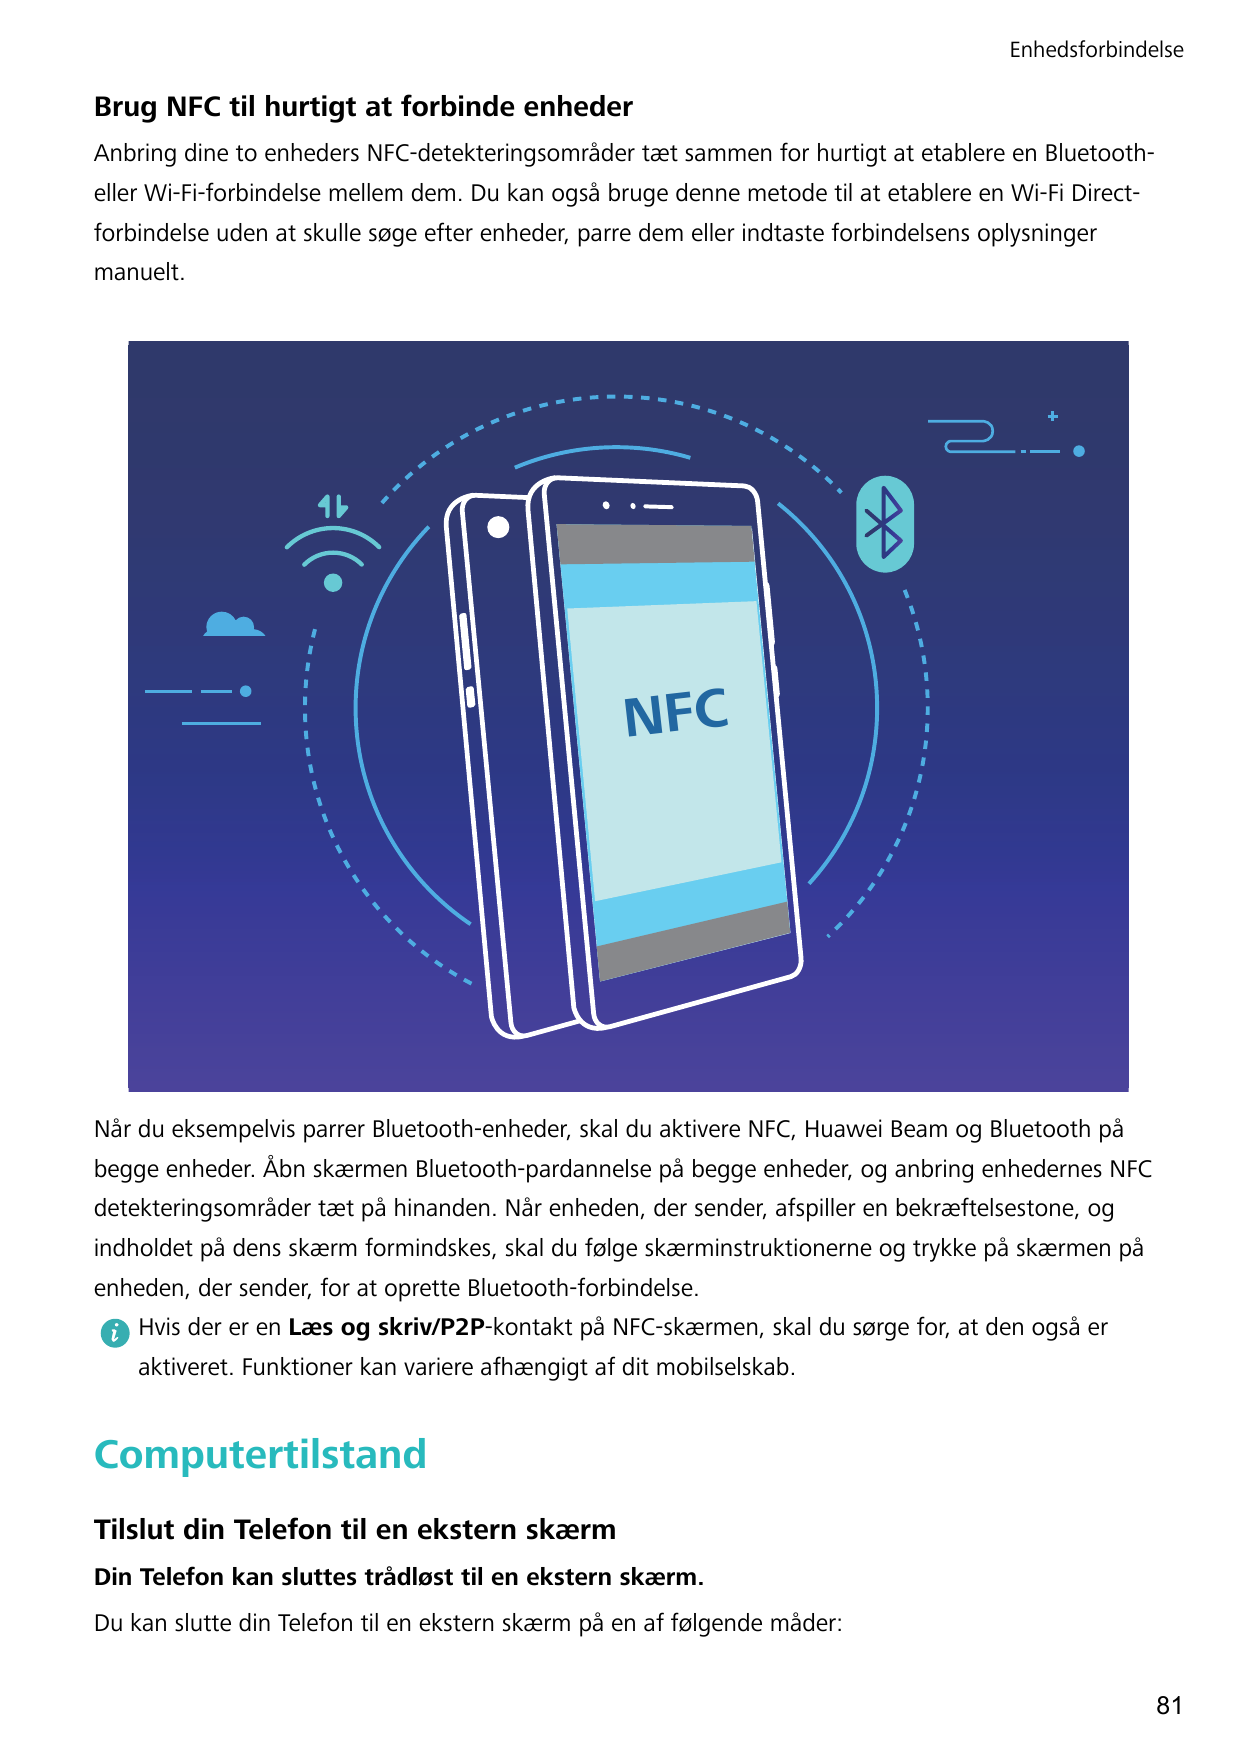 EnhedsforbindelseBrug NFC til hurtigt at forbinde enhederAnbring dine to enheders NFC-detekteringsområder tæt sammen for hurtigt